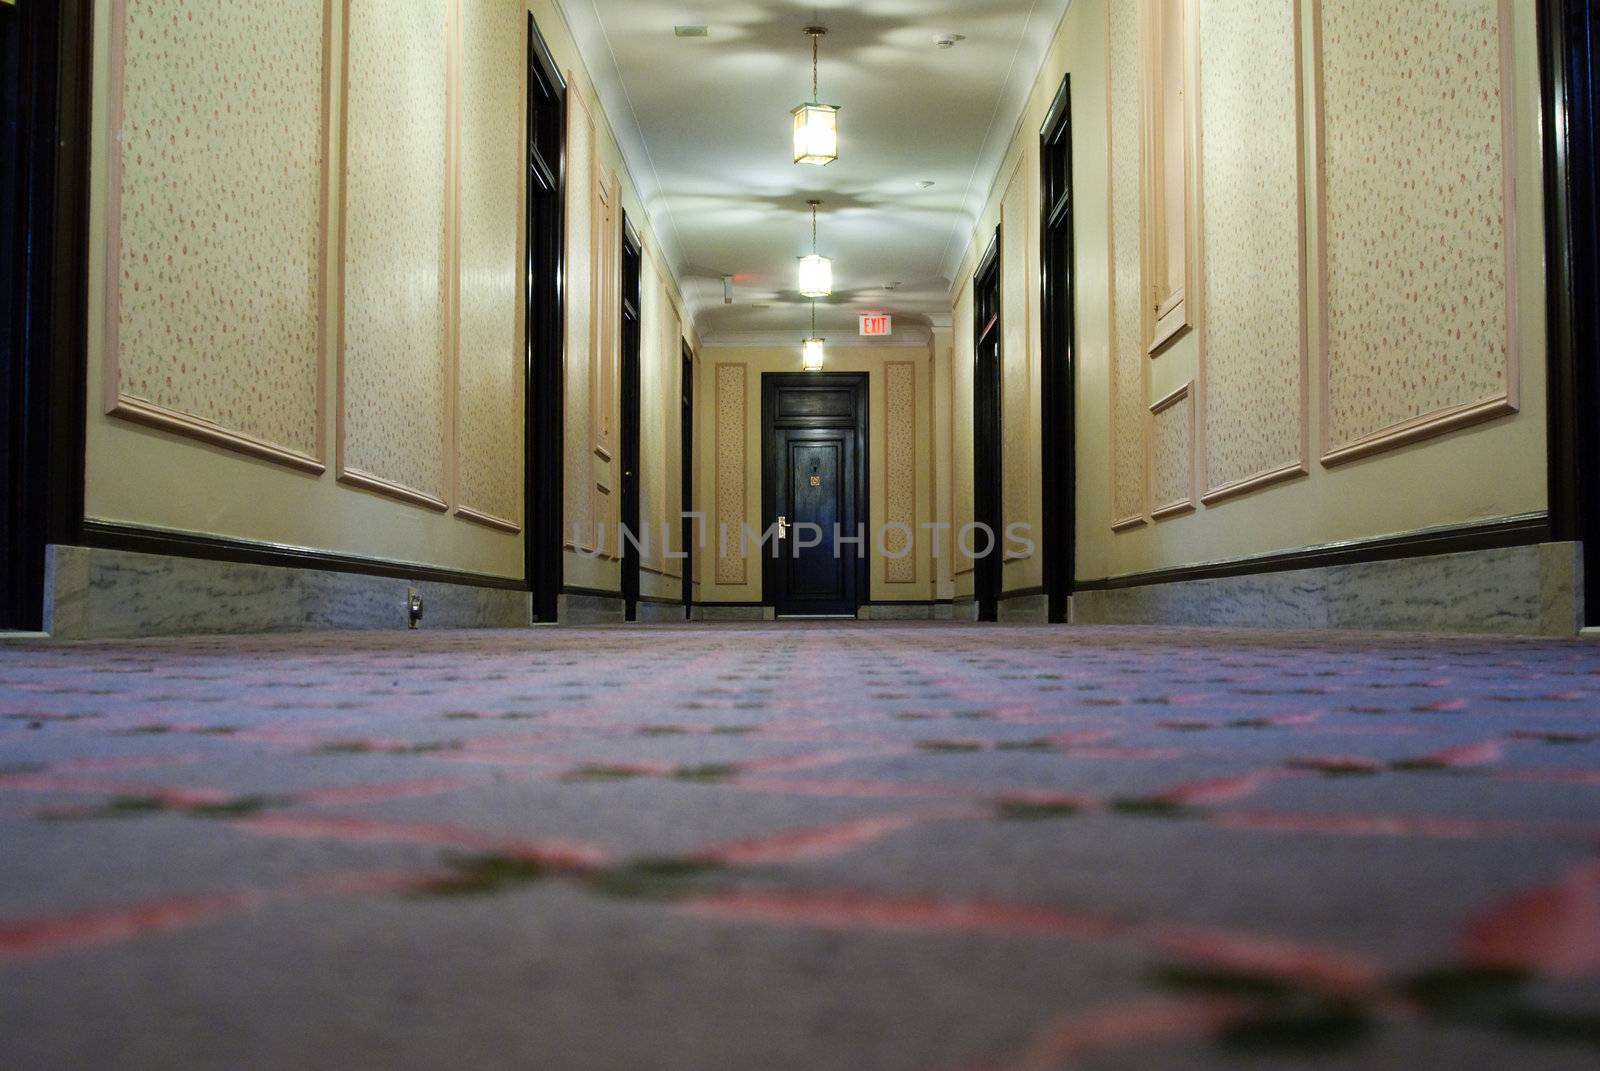 Hotel Hallway by dragon_fang